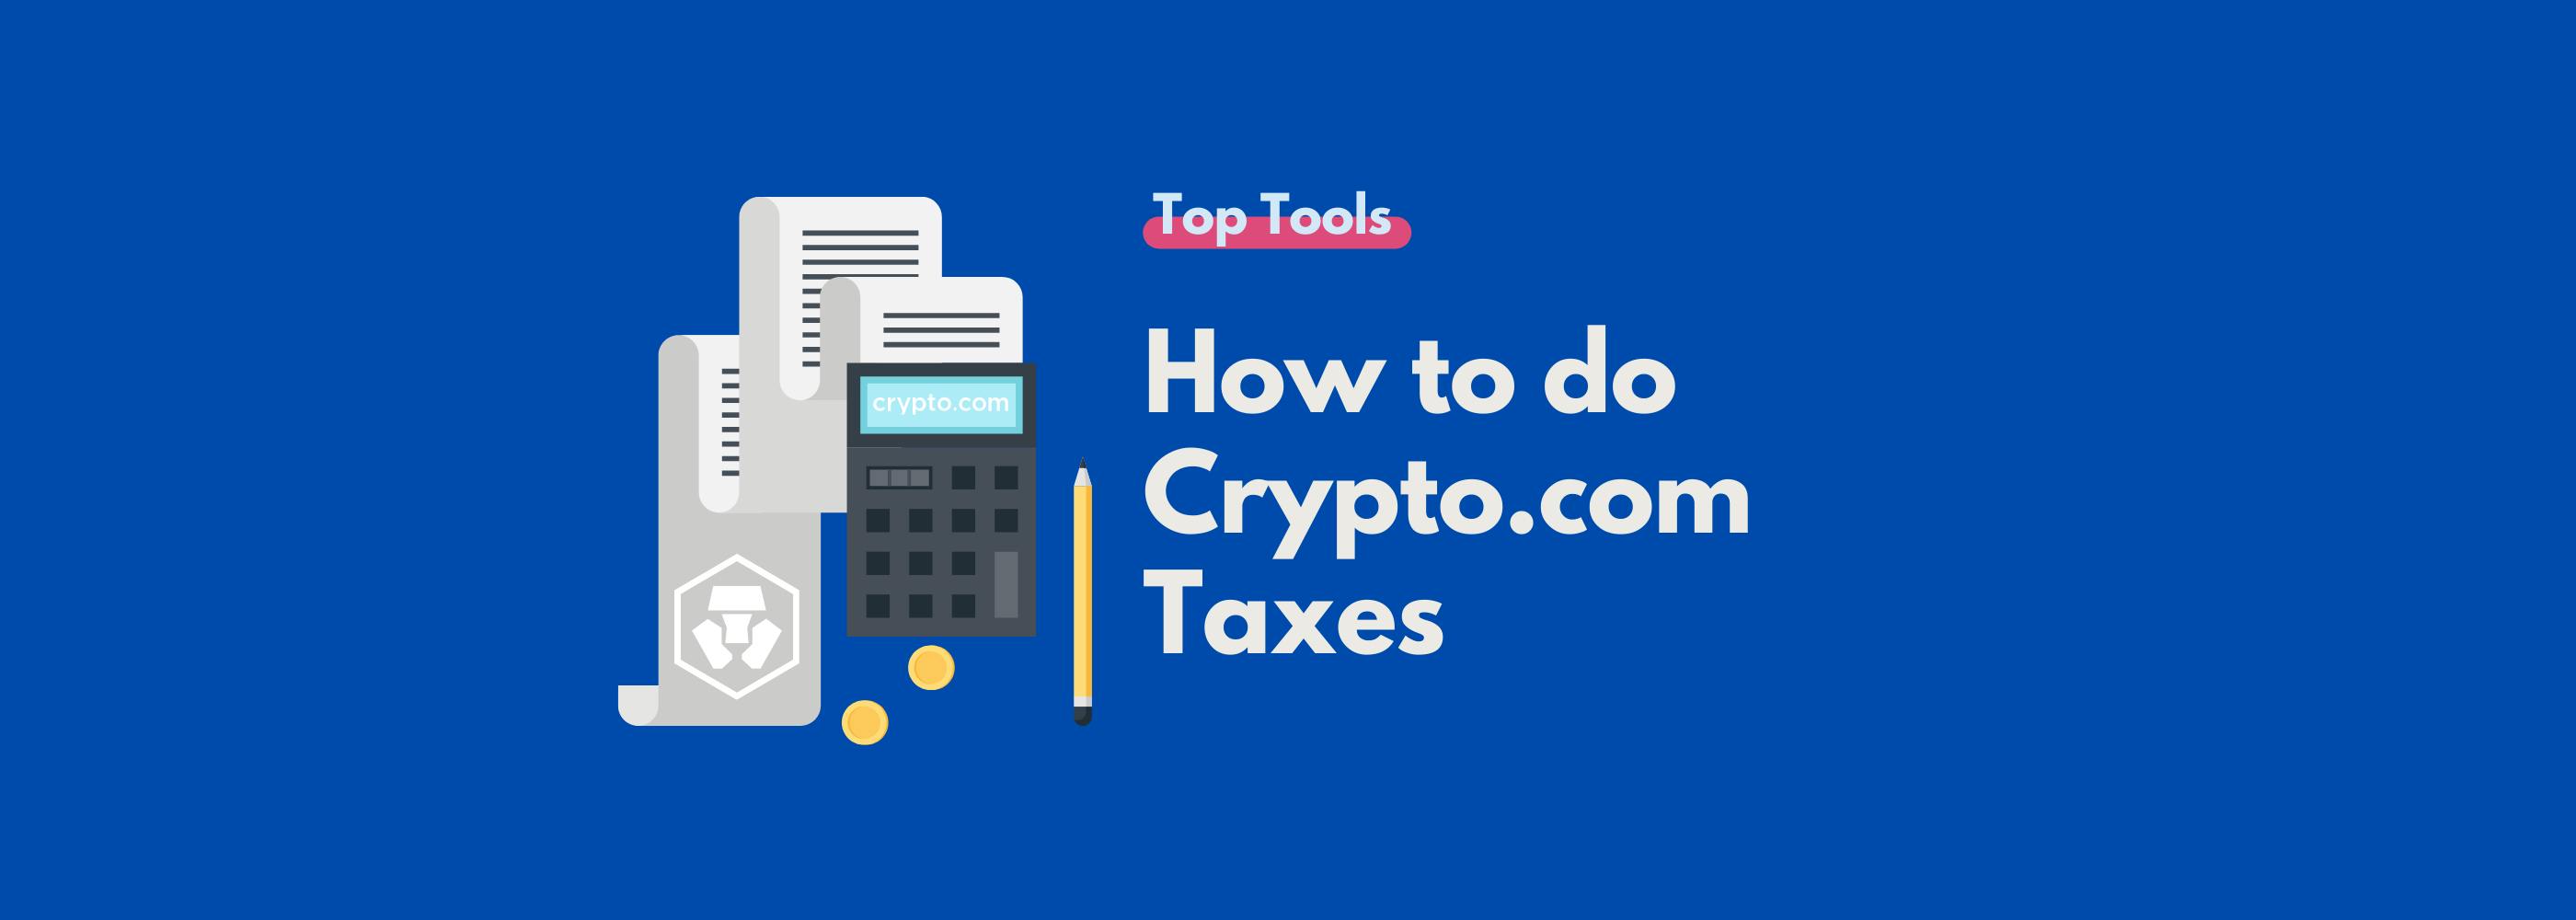 does crypto.com tax you